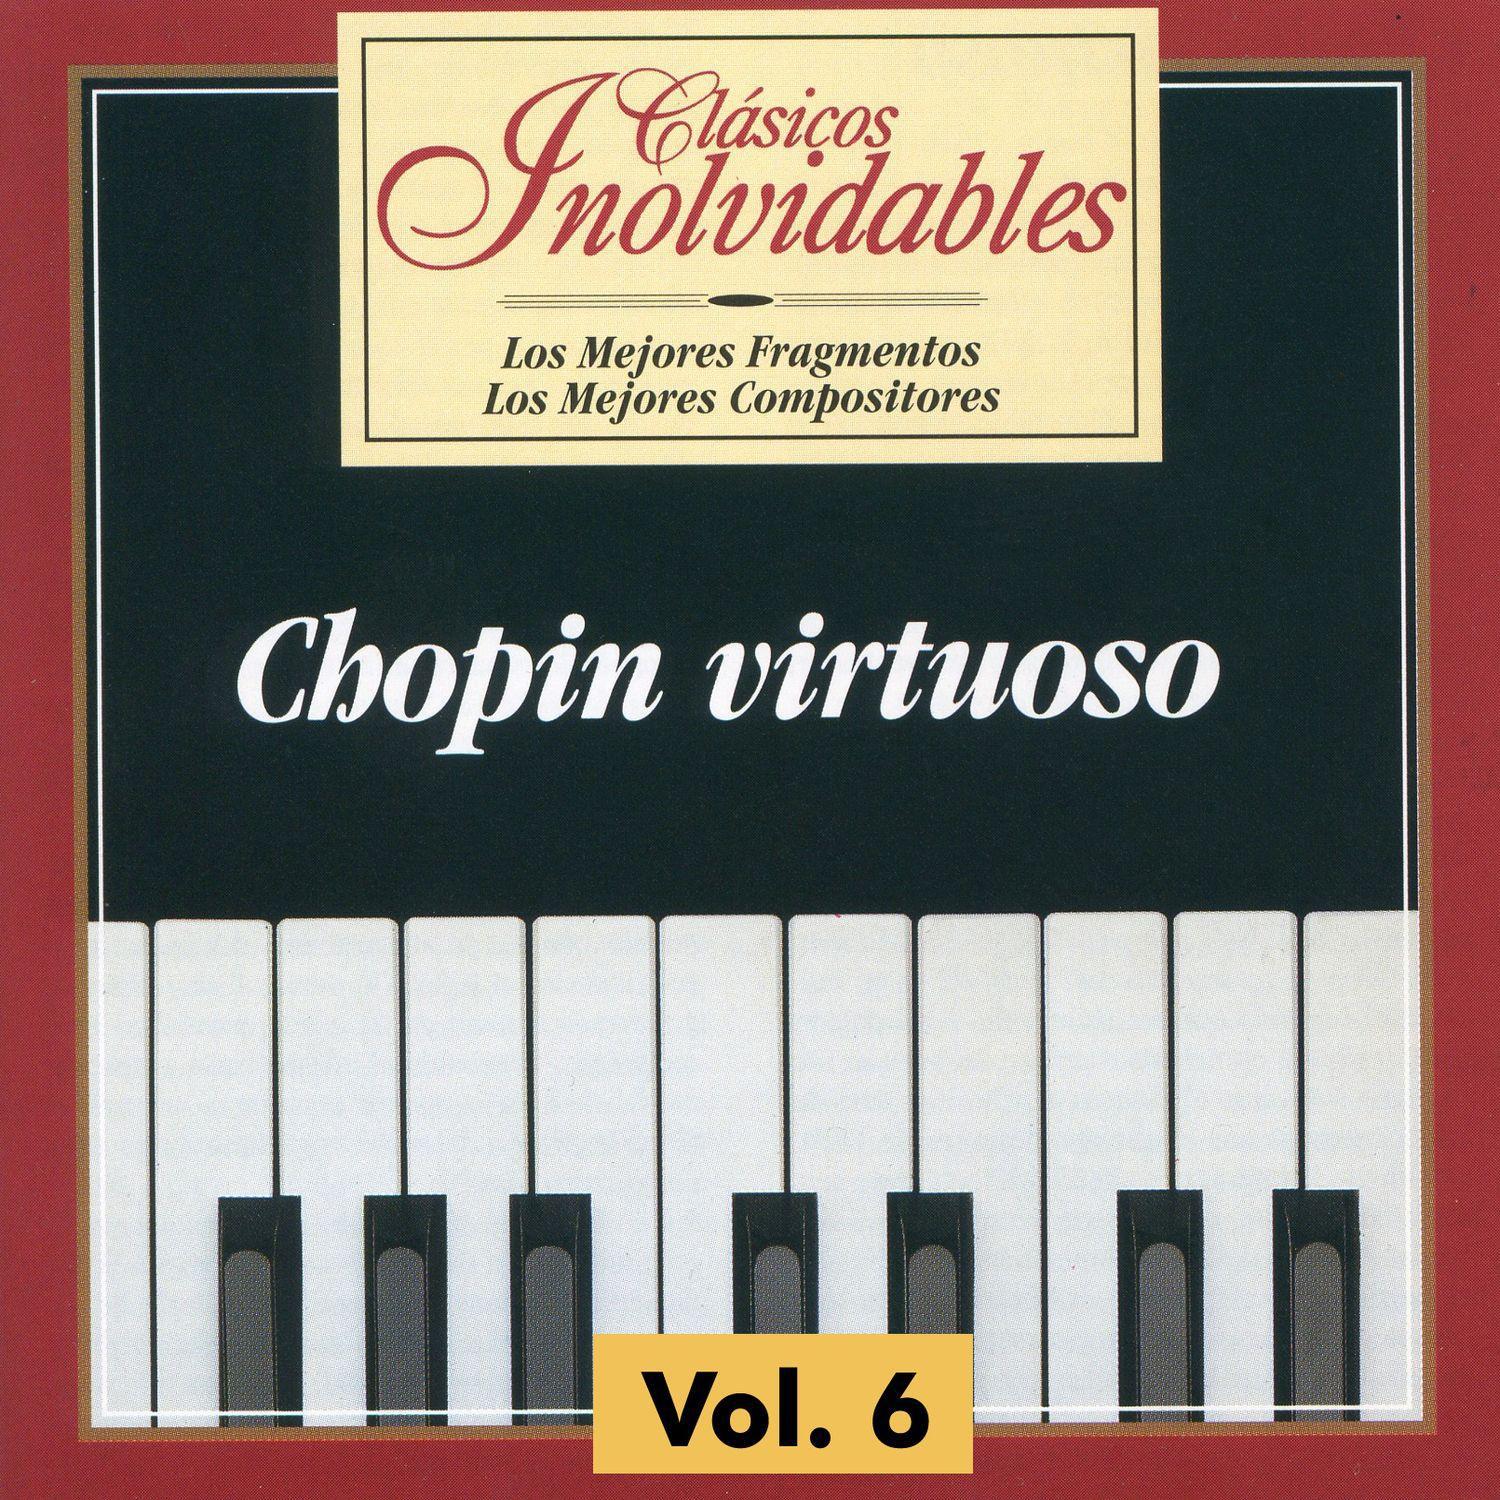 Clásicos Inolvidables Vol. 6, Chopin Virtuoso